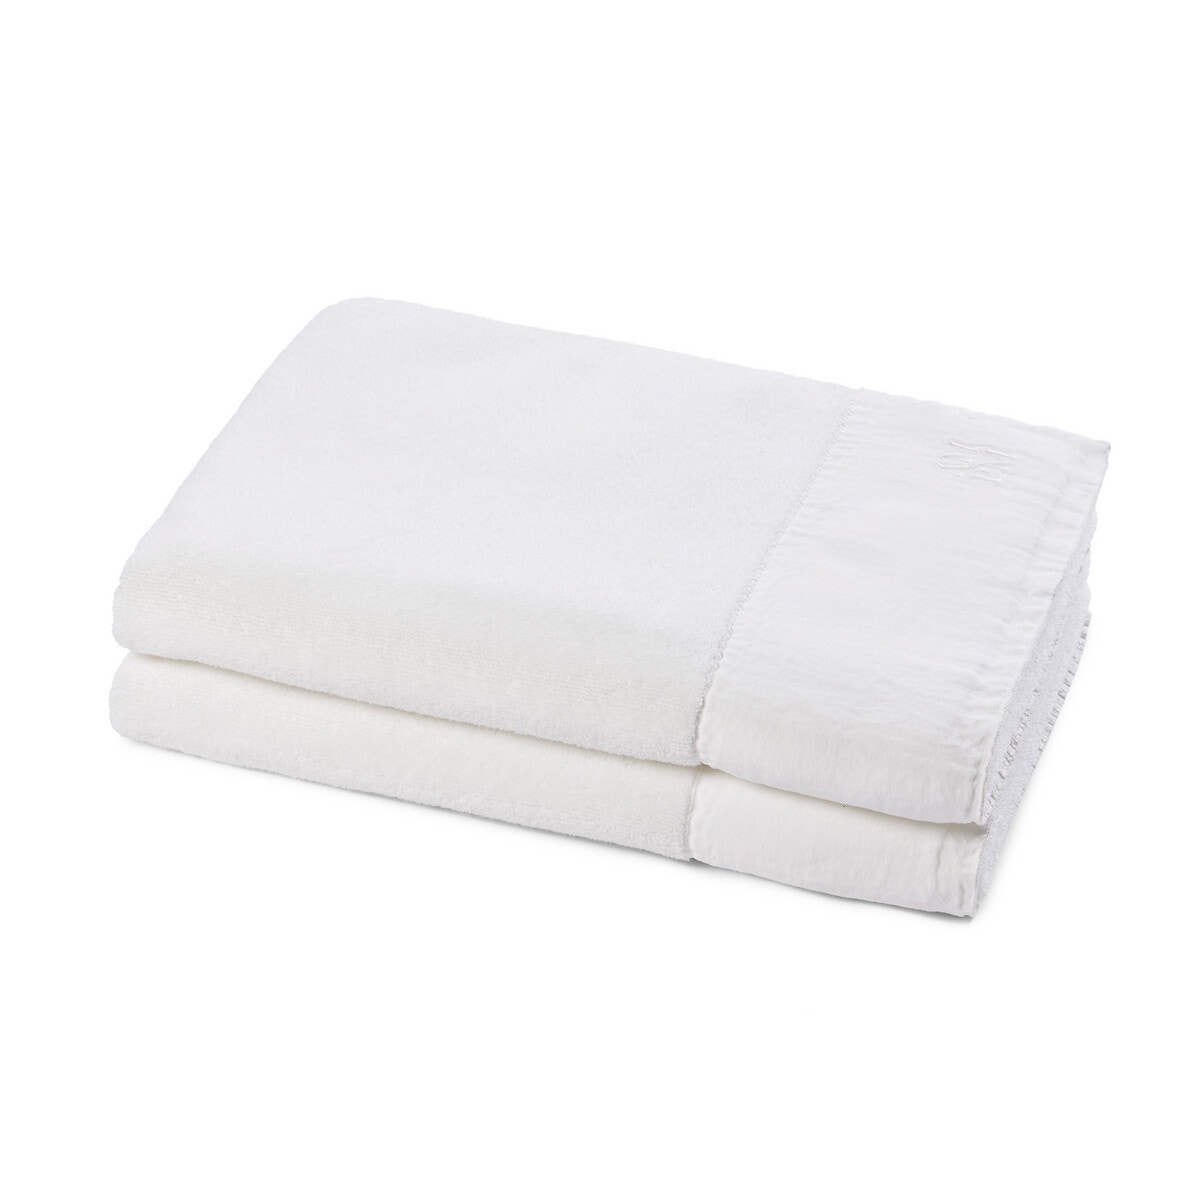 Σπίτι > Λευκά είδη > Μπάνιο > Πετσέτες προσώπου Σετ 2 πετσέτες προσώπου από οργανικό βαμβάκι 50x100 cm